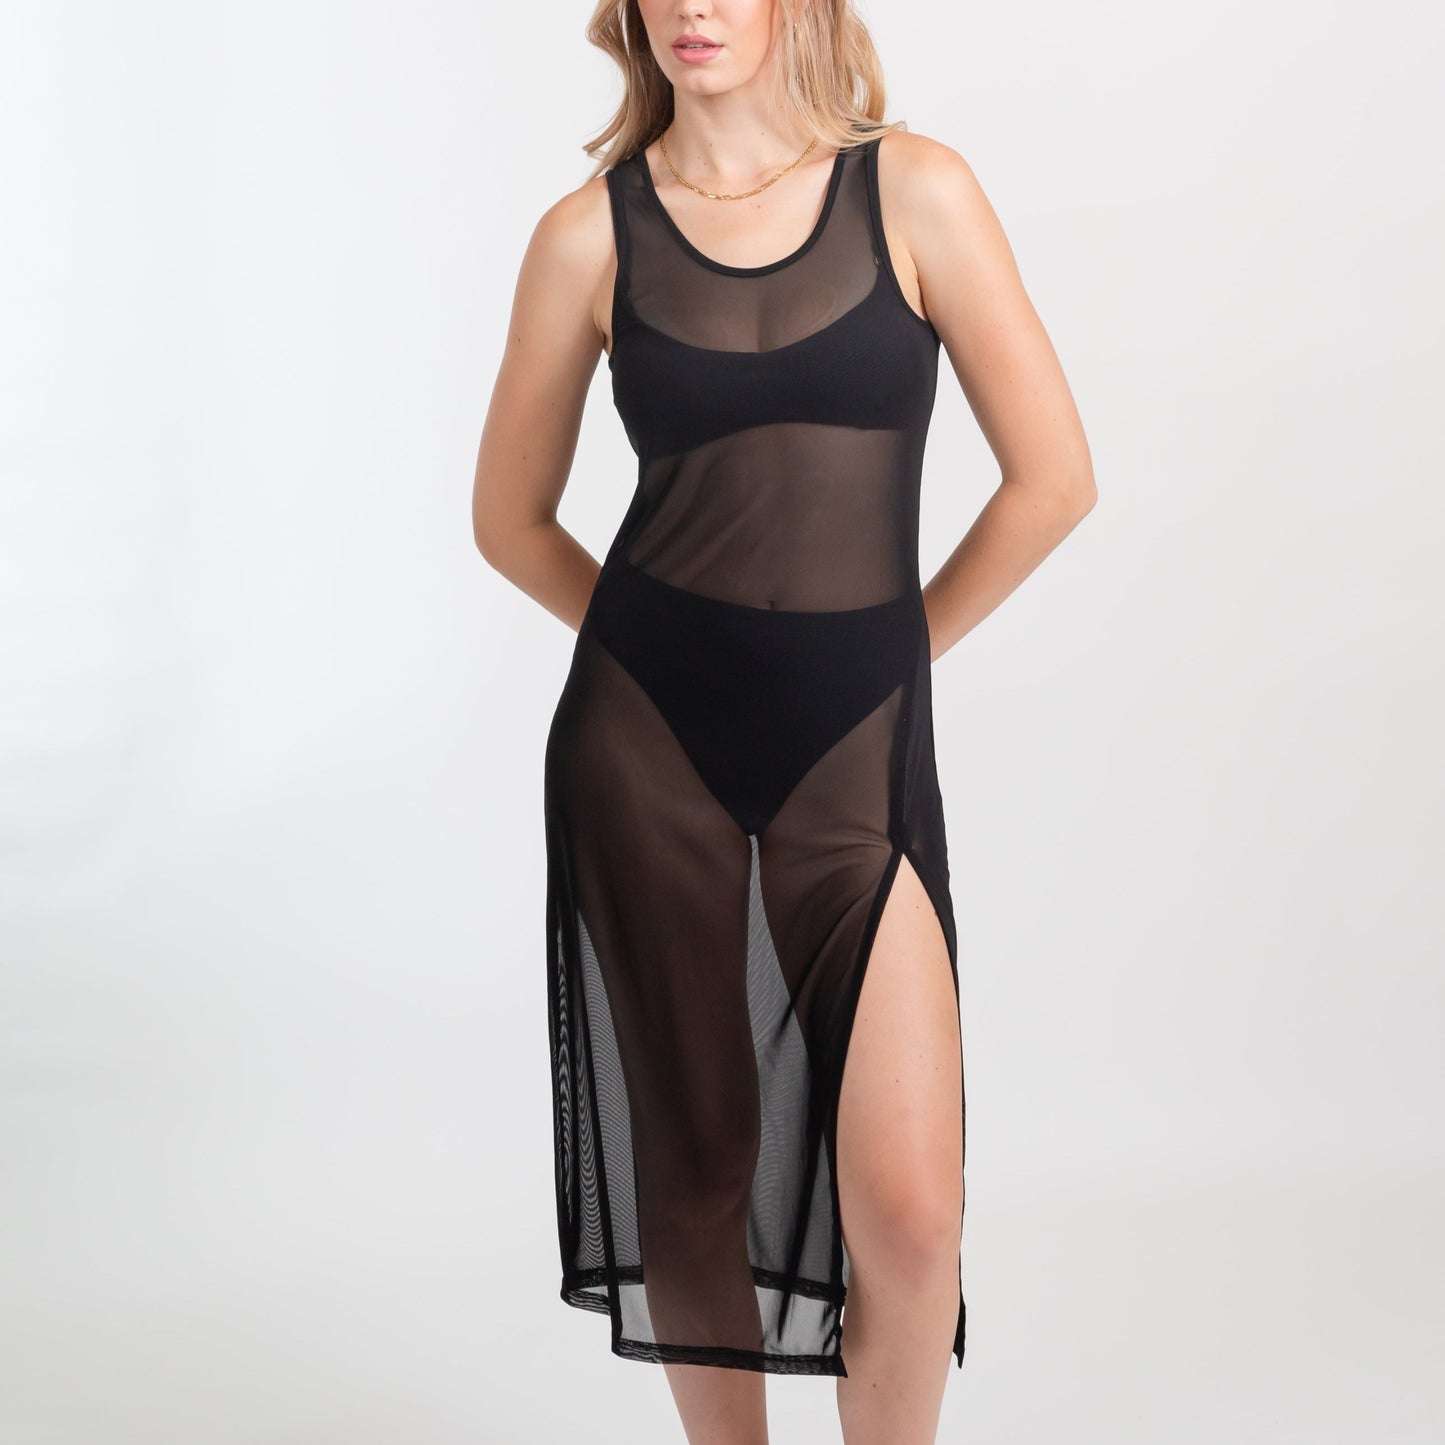 Escape Mesh Long Dress - K2365 Swim - Cover ups Voce Enterprises BLACK XS 